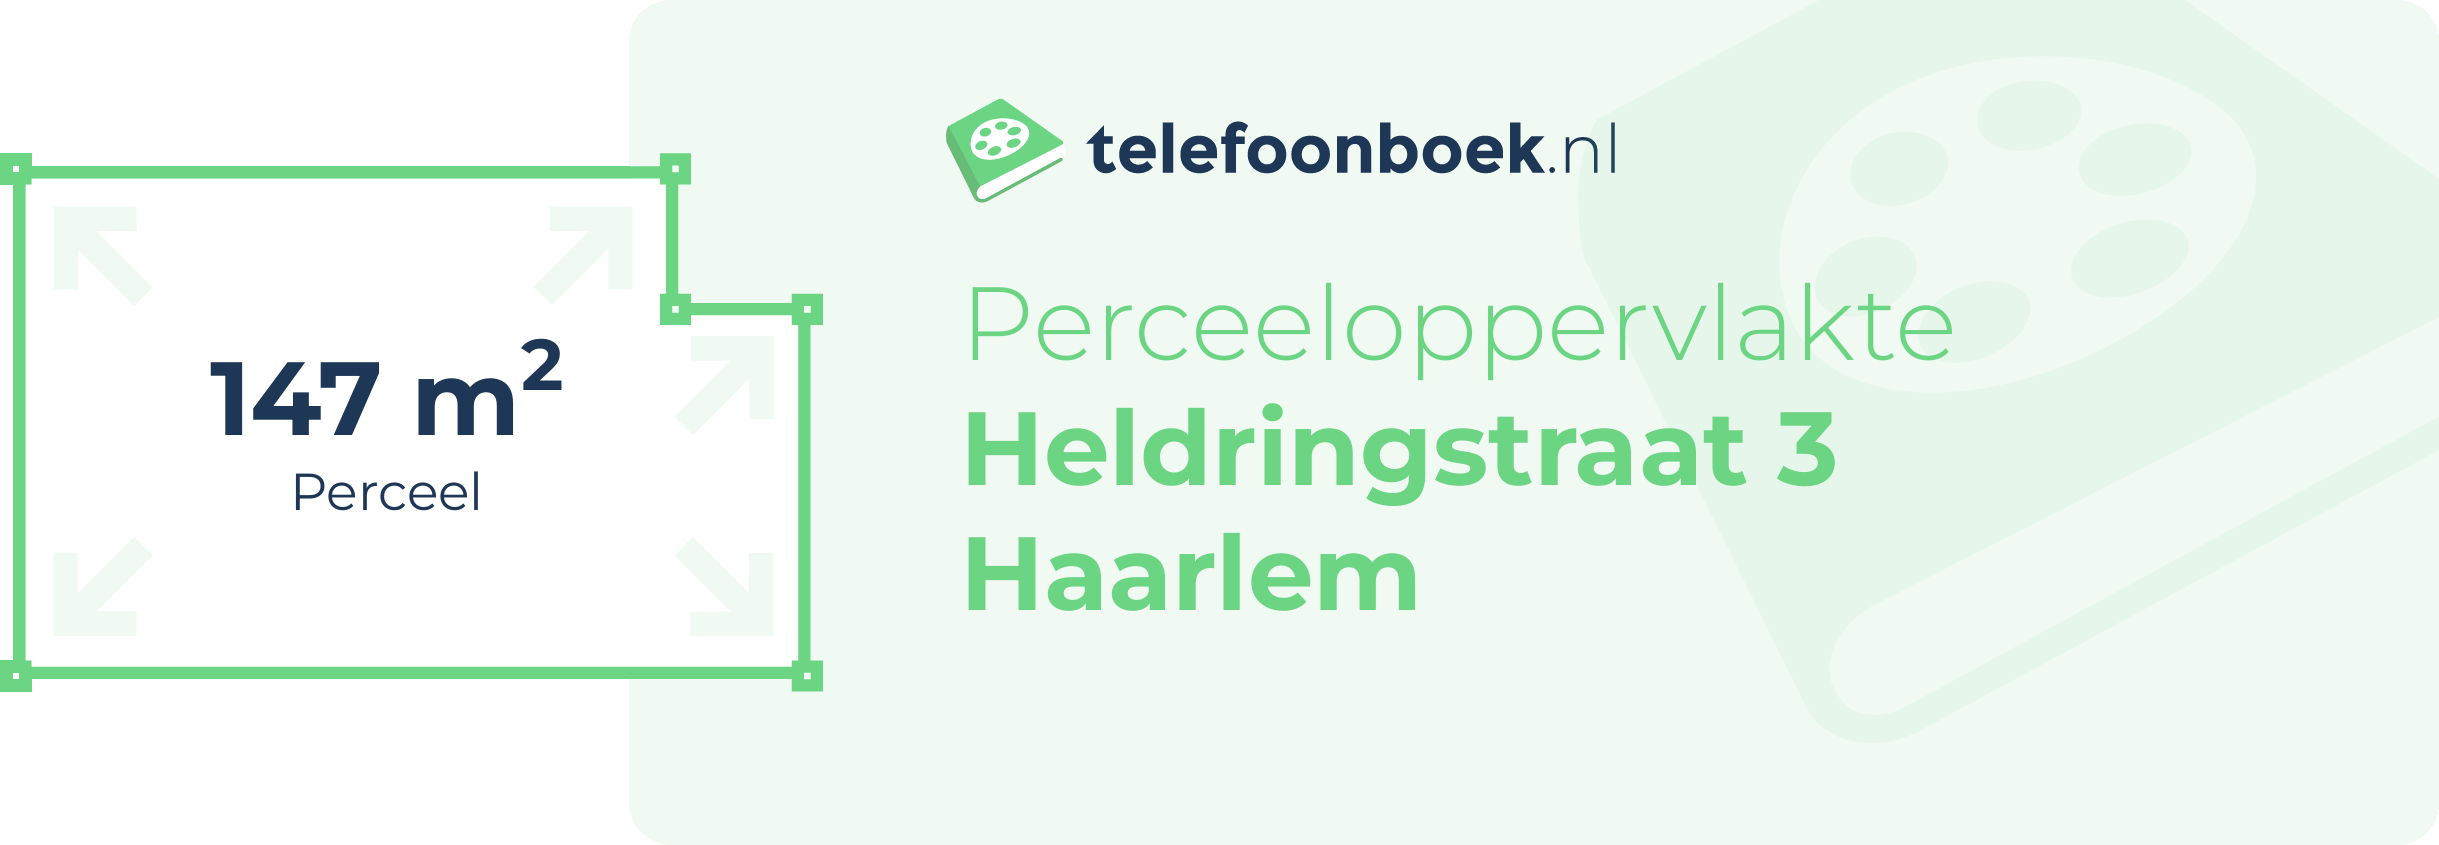 Perceeloppervlakte Heldringstraat 3 Haarlem